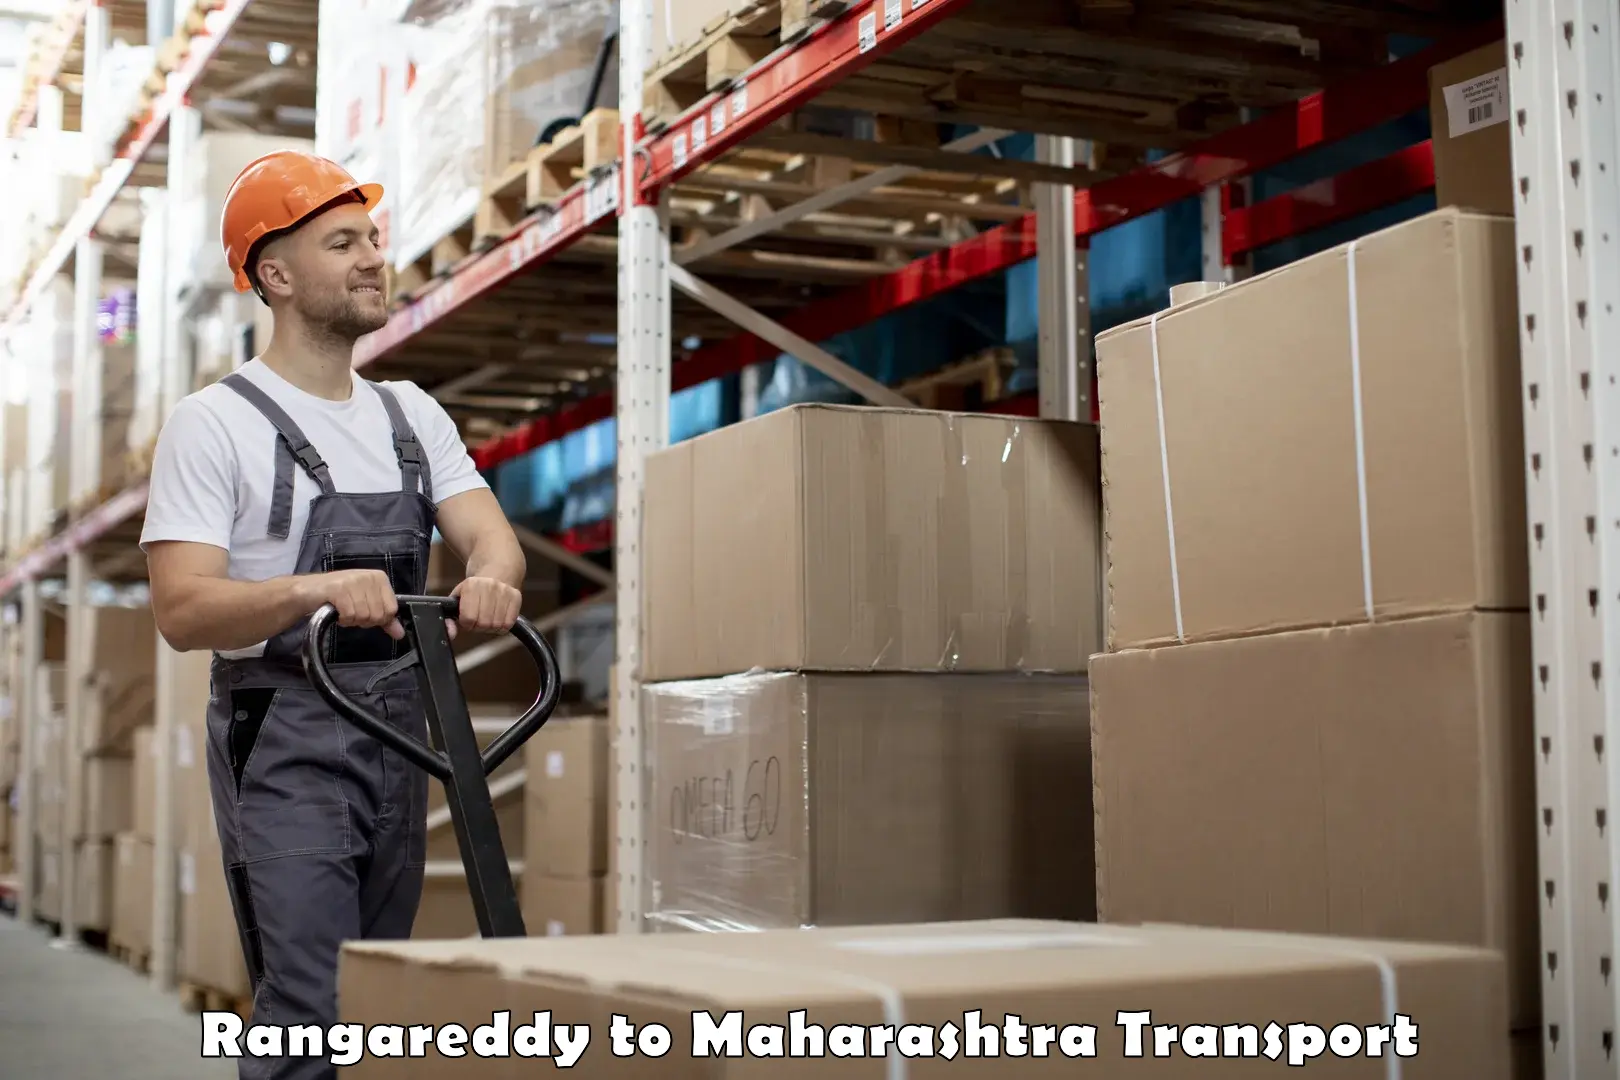 Lorry transport service Rangareddy to Maharashtra